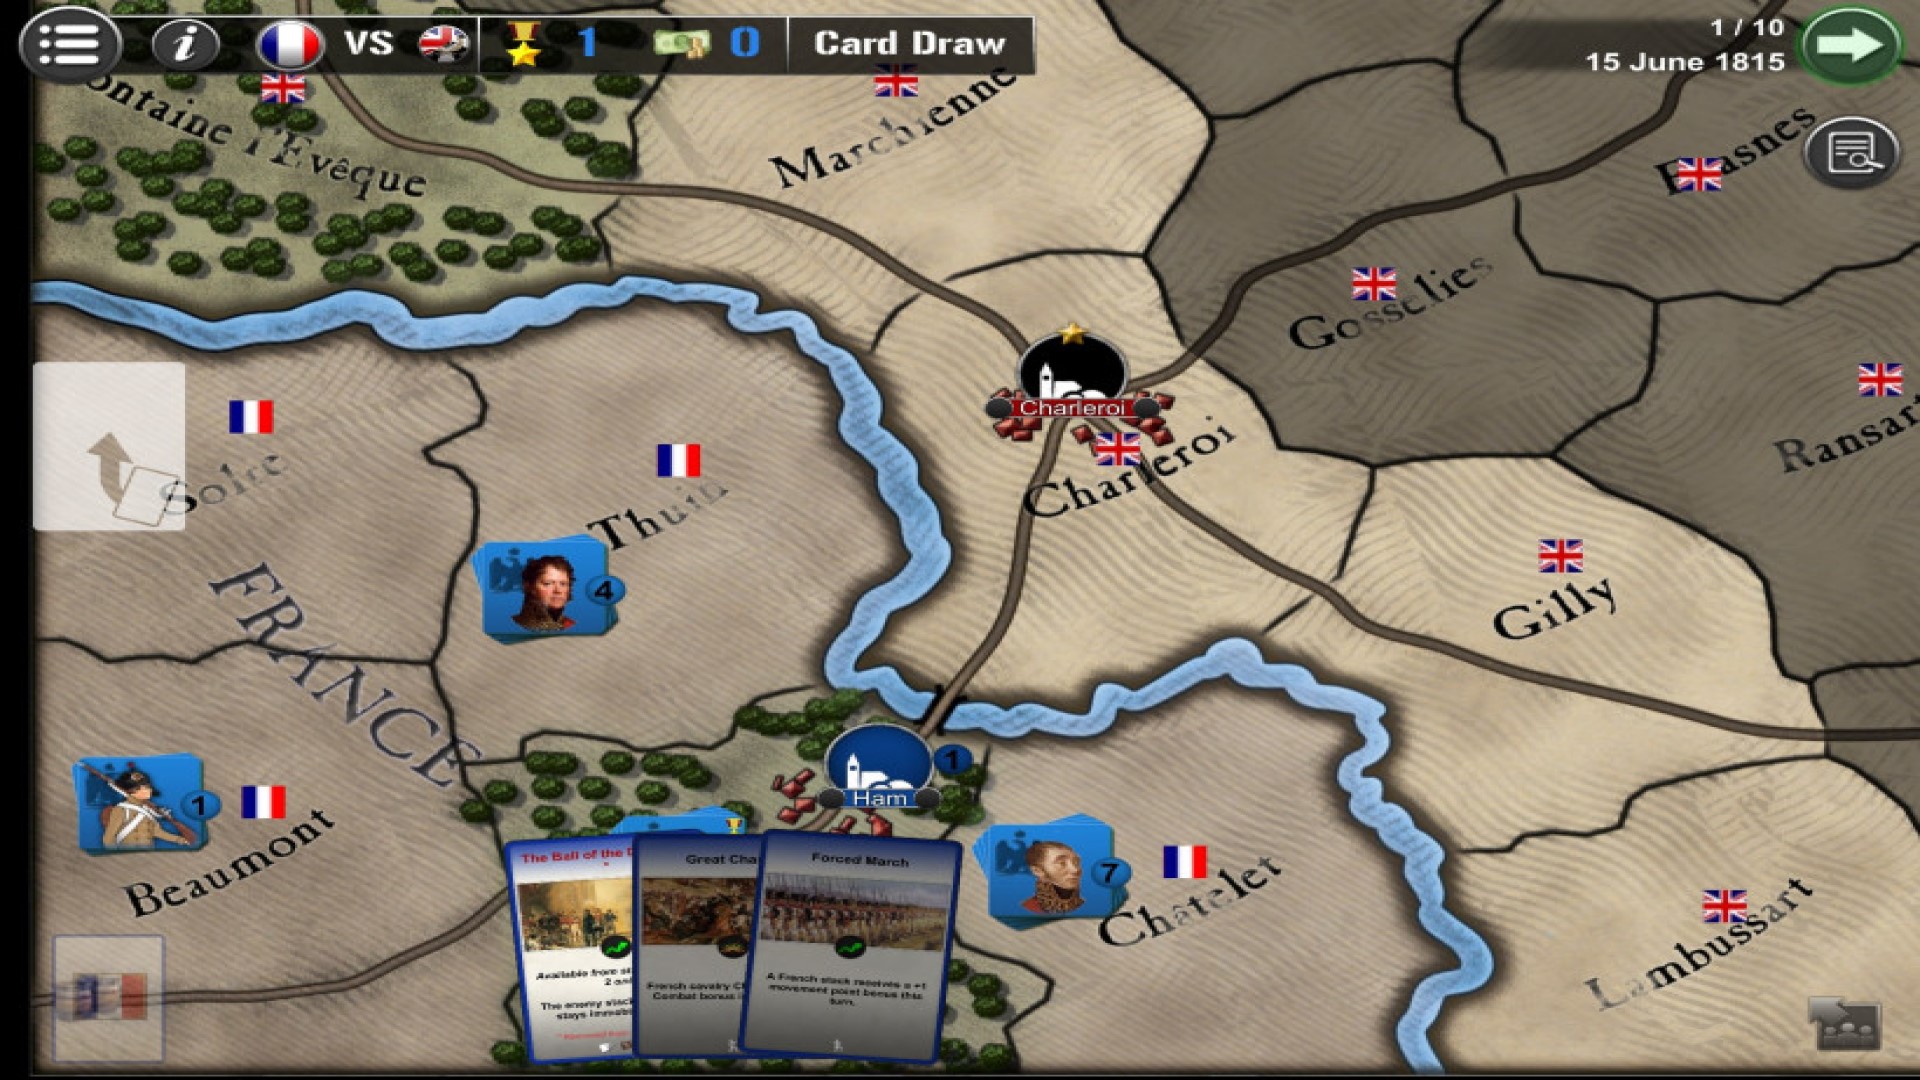 Game Perang Seluler Terbaik: Perang di seluruh dunia. Gambar menunjukkan peta sebagian Inggris, dengan pemain memegang beberapa kartu yang menyajikan opsi